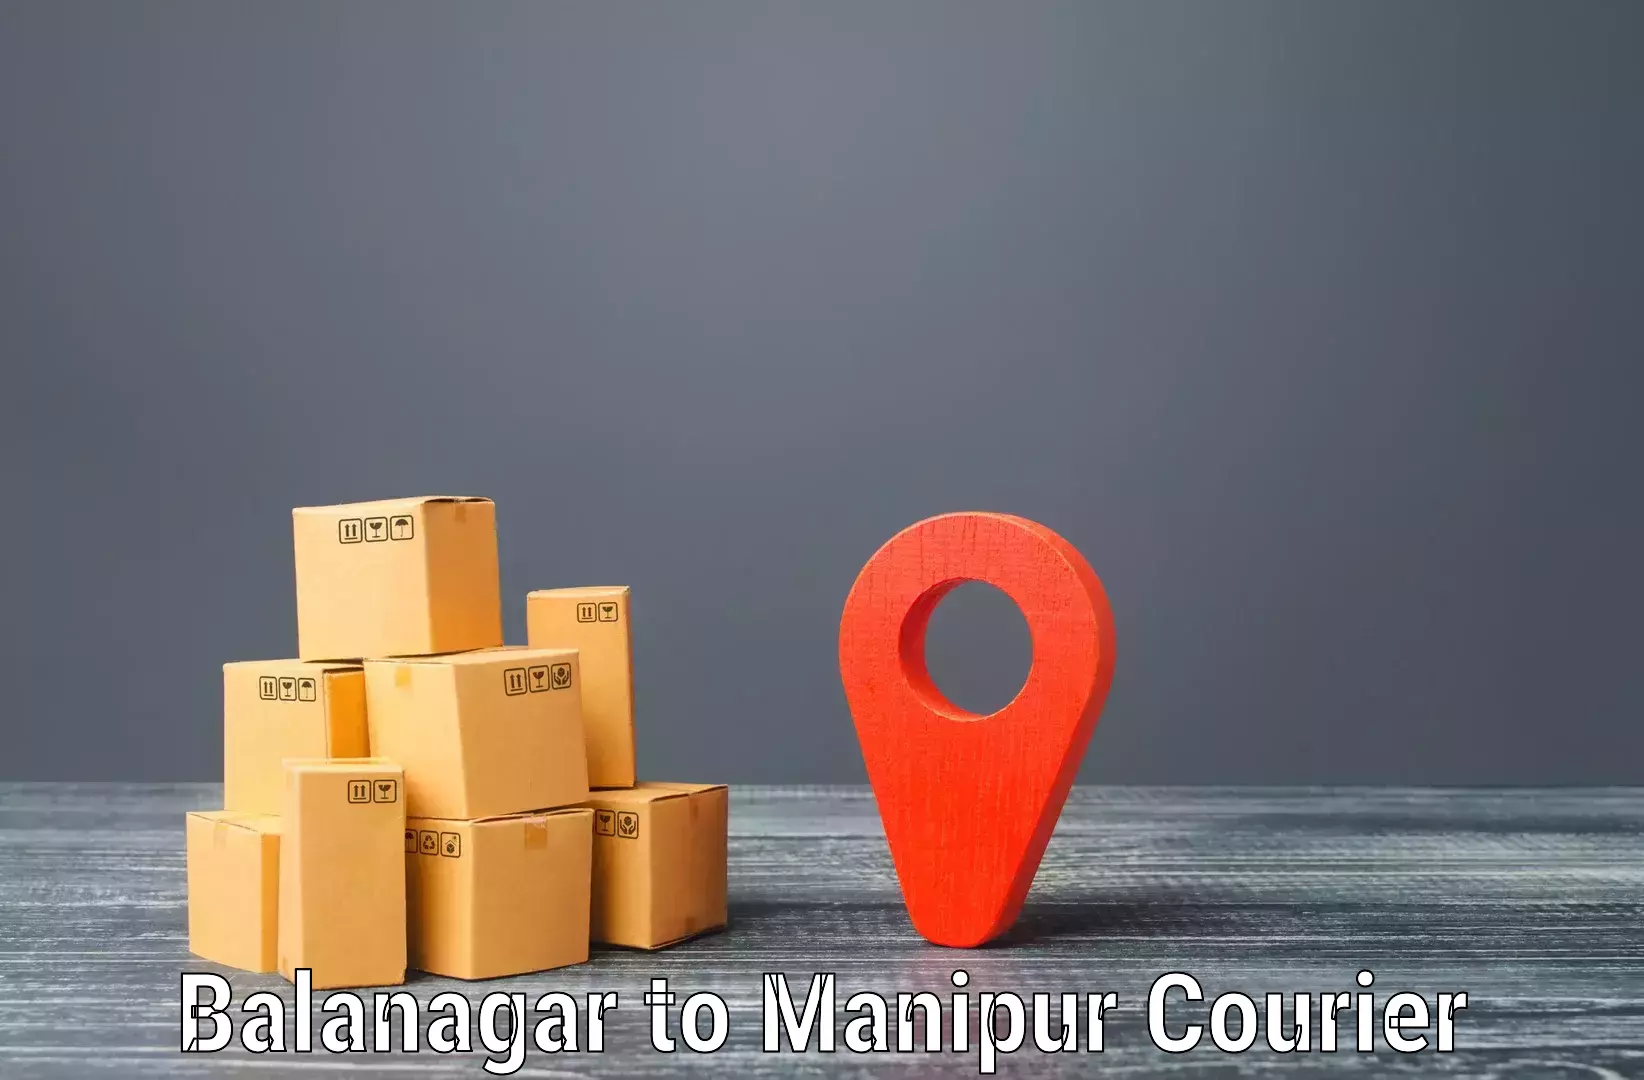 Pharmaceutical courier Balanagar to Moirang